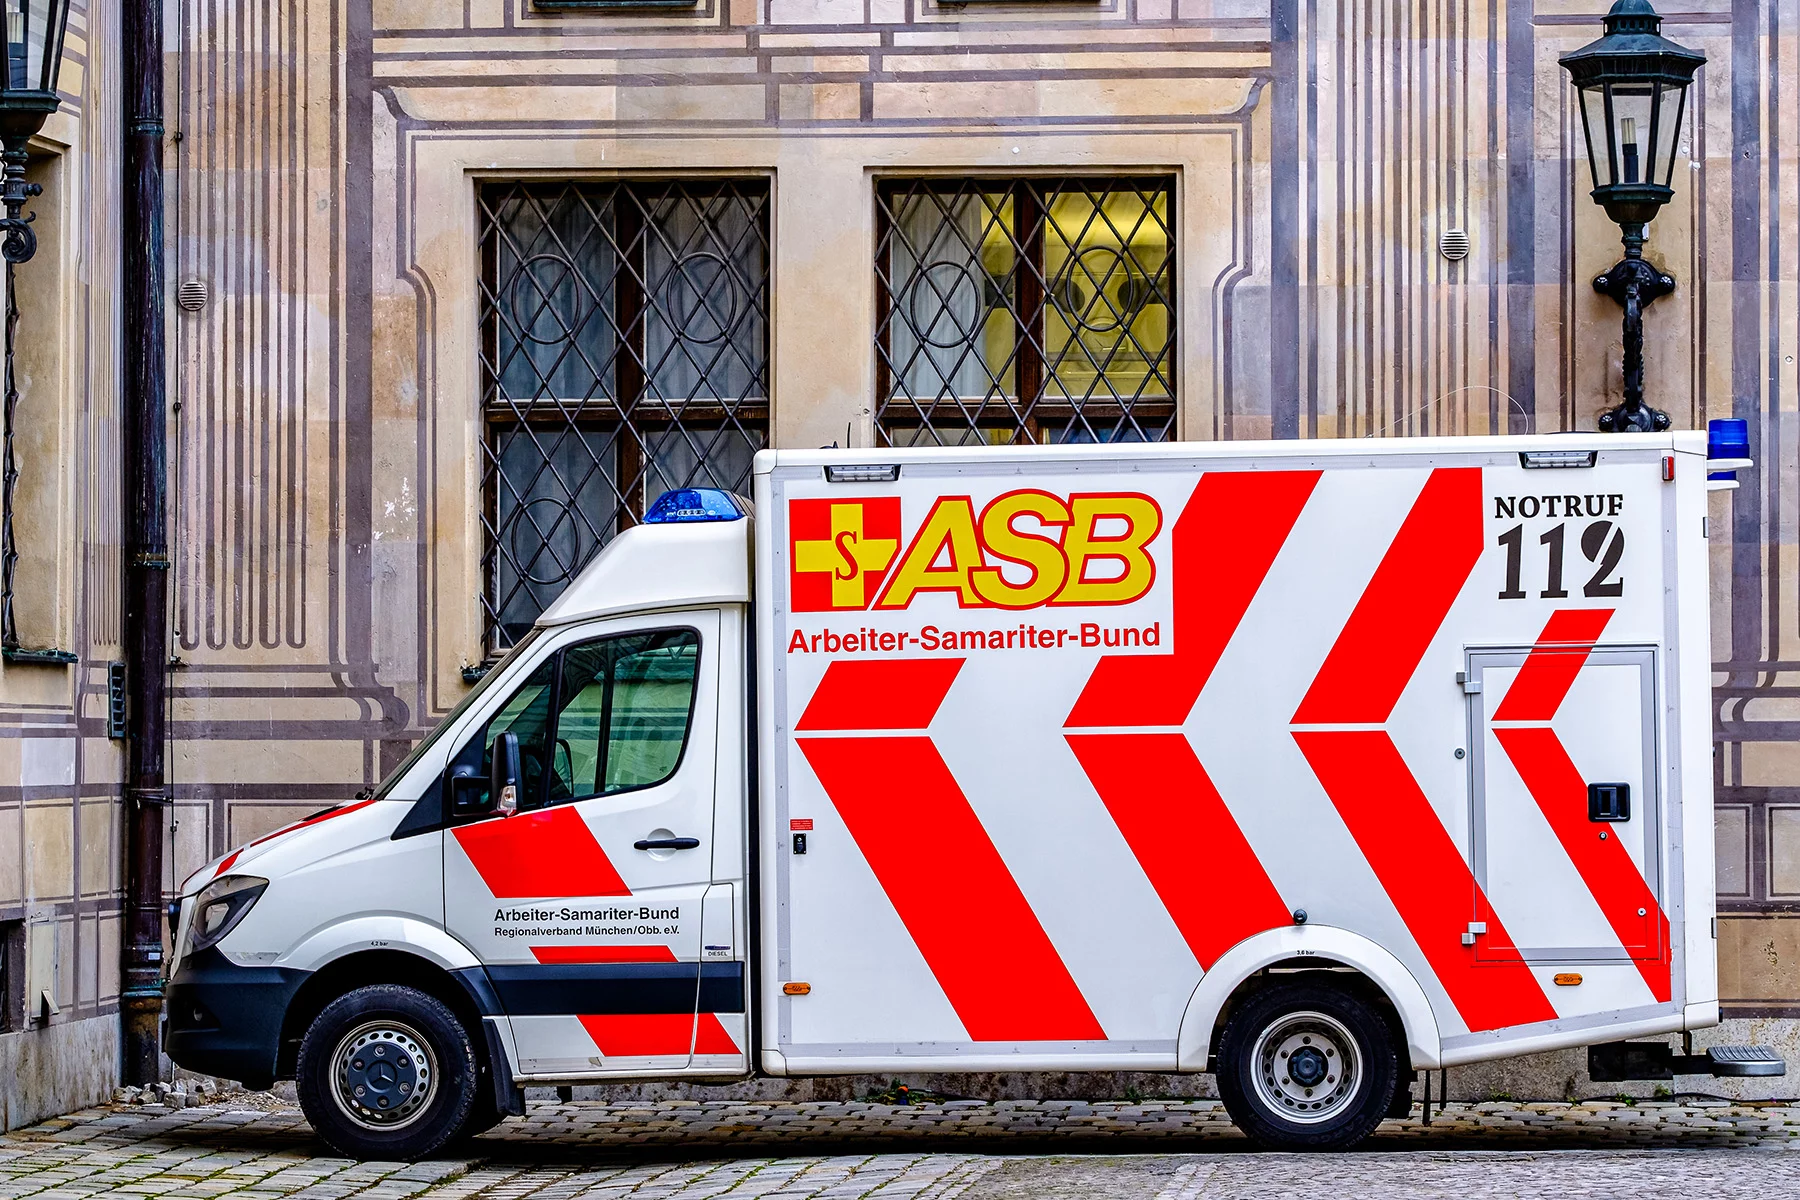 An ambulance in Munich, Germany